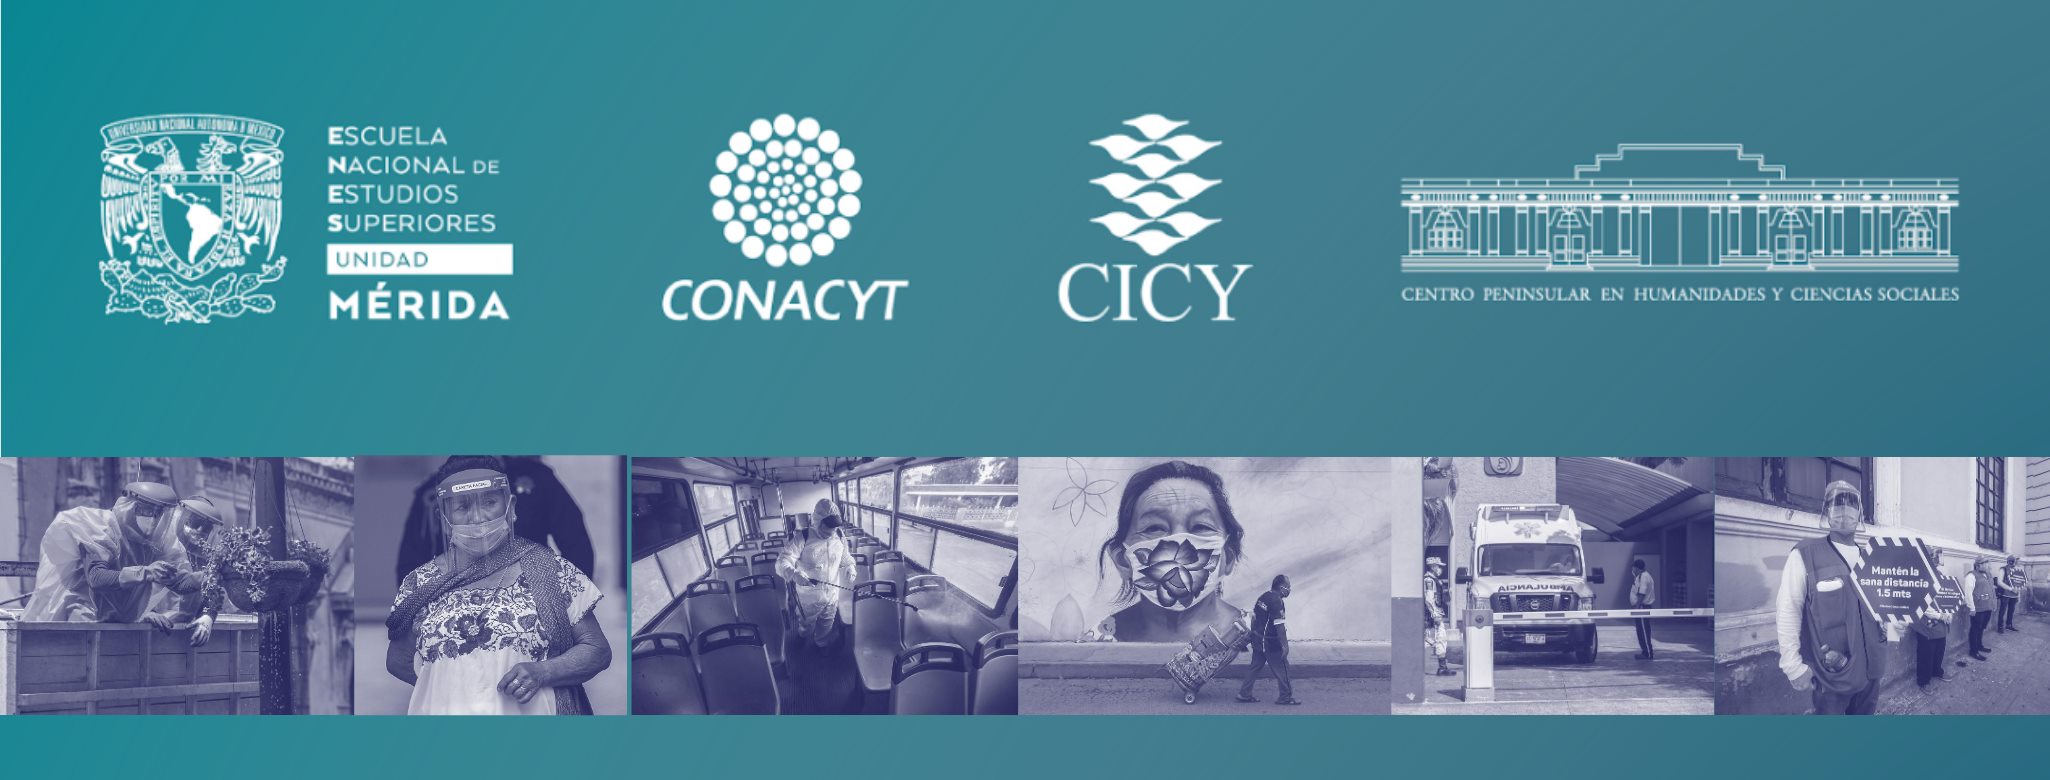 Presenta ORGA resultados de su proyecto sobre gobernanza y COVID-19 en Yucatán